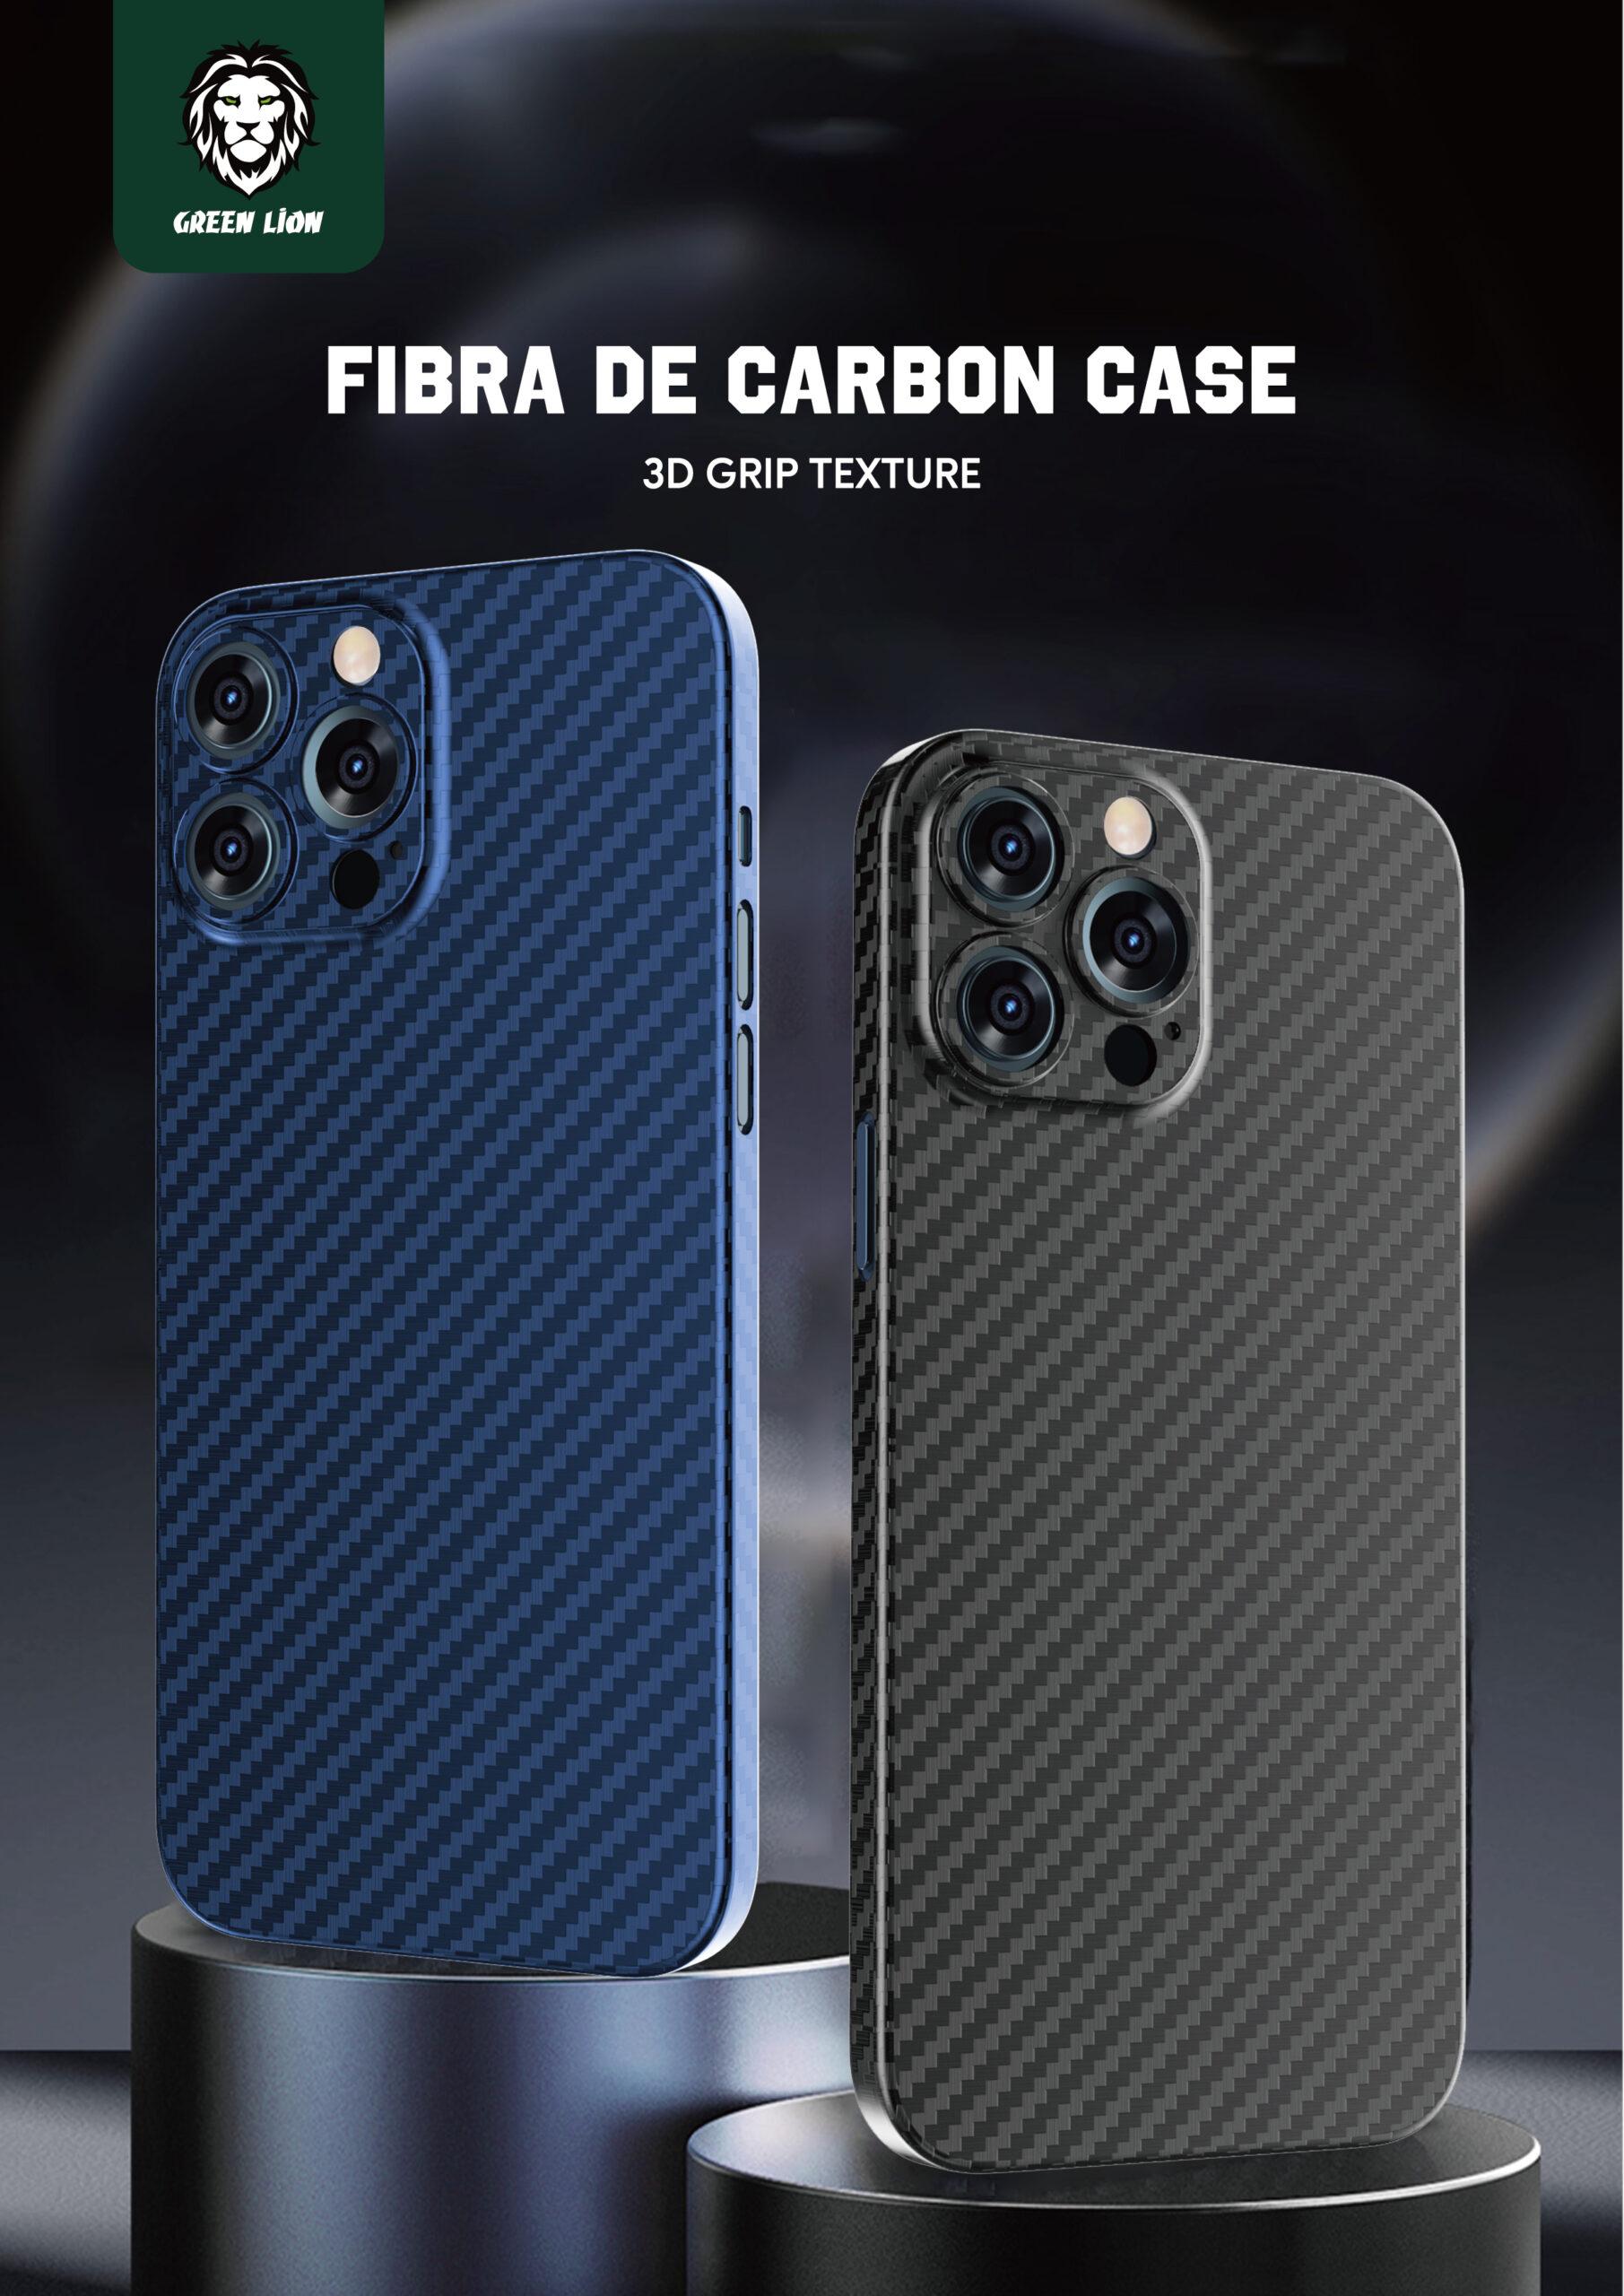 كفر كربون لجهاز iPhone 13 لون أزرق Fibra de Carbon Case for iPhone 13 - Green - cG9zdDozMzU2Nzc=